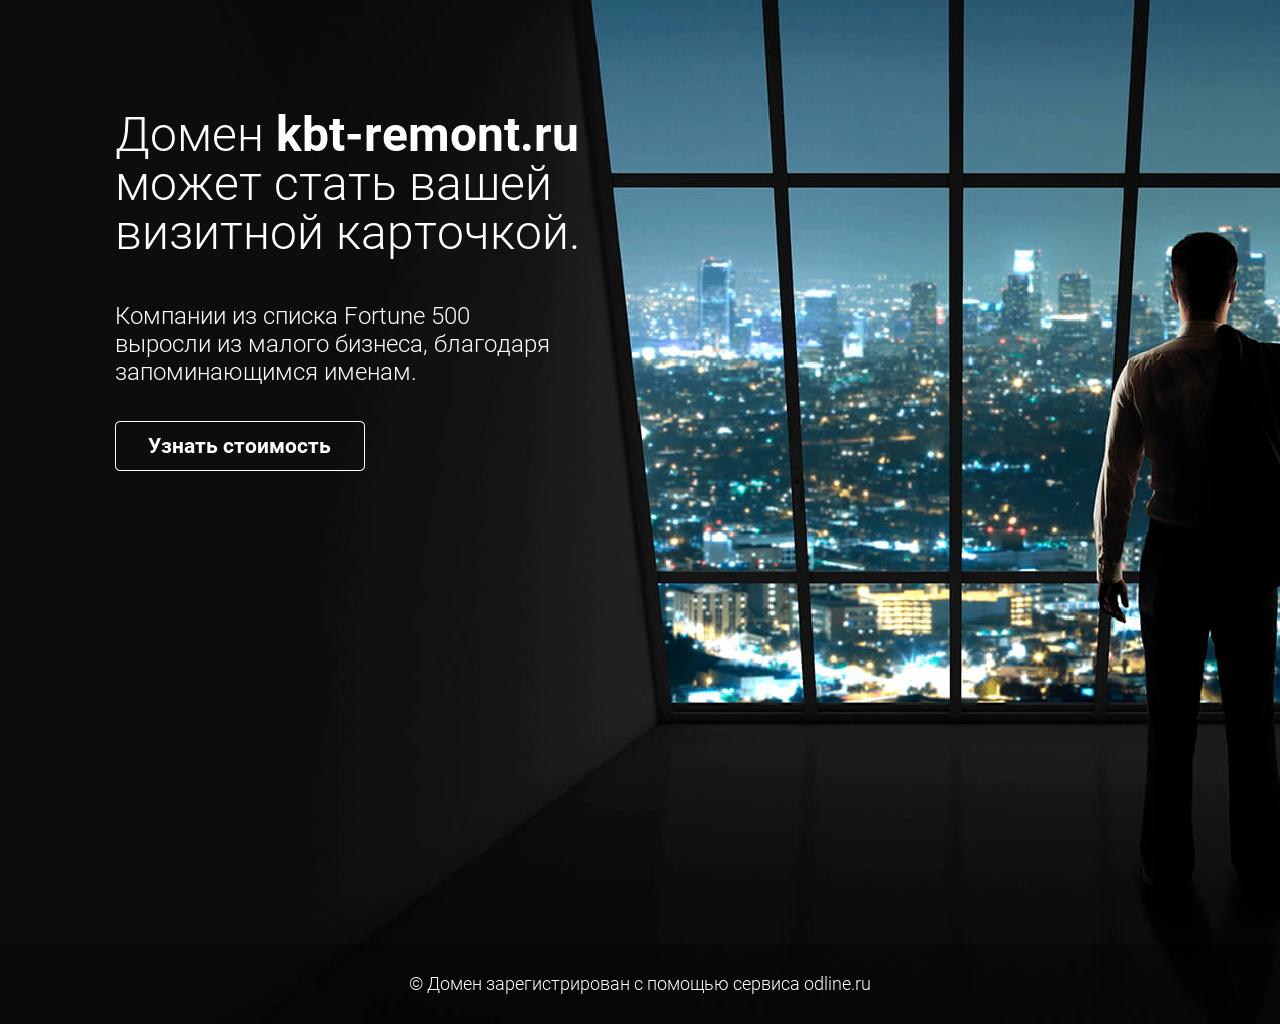 Изображение сайта kbt-remont.ru в разрешении 1280x1024